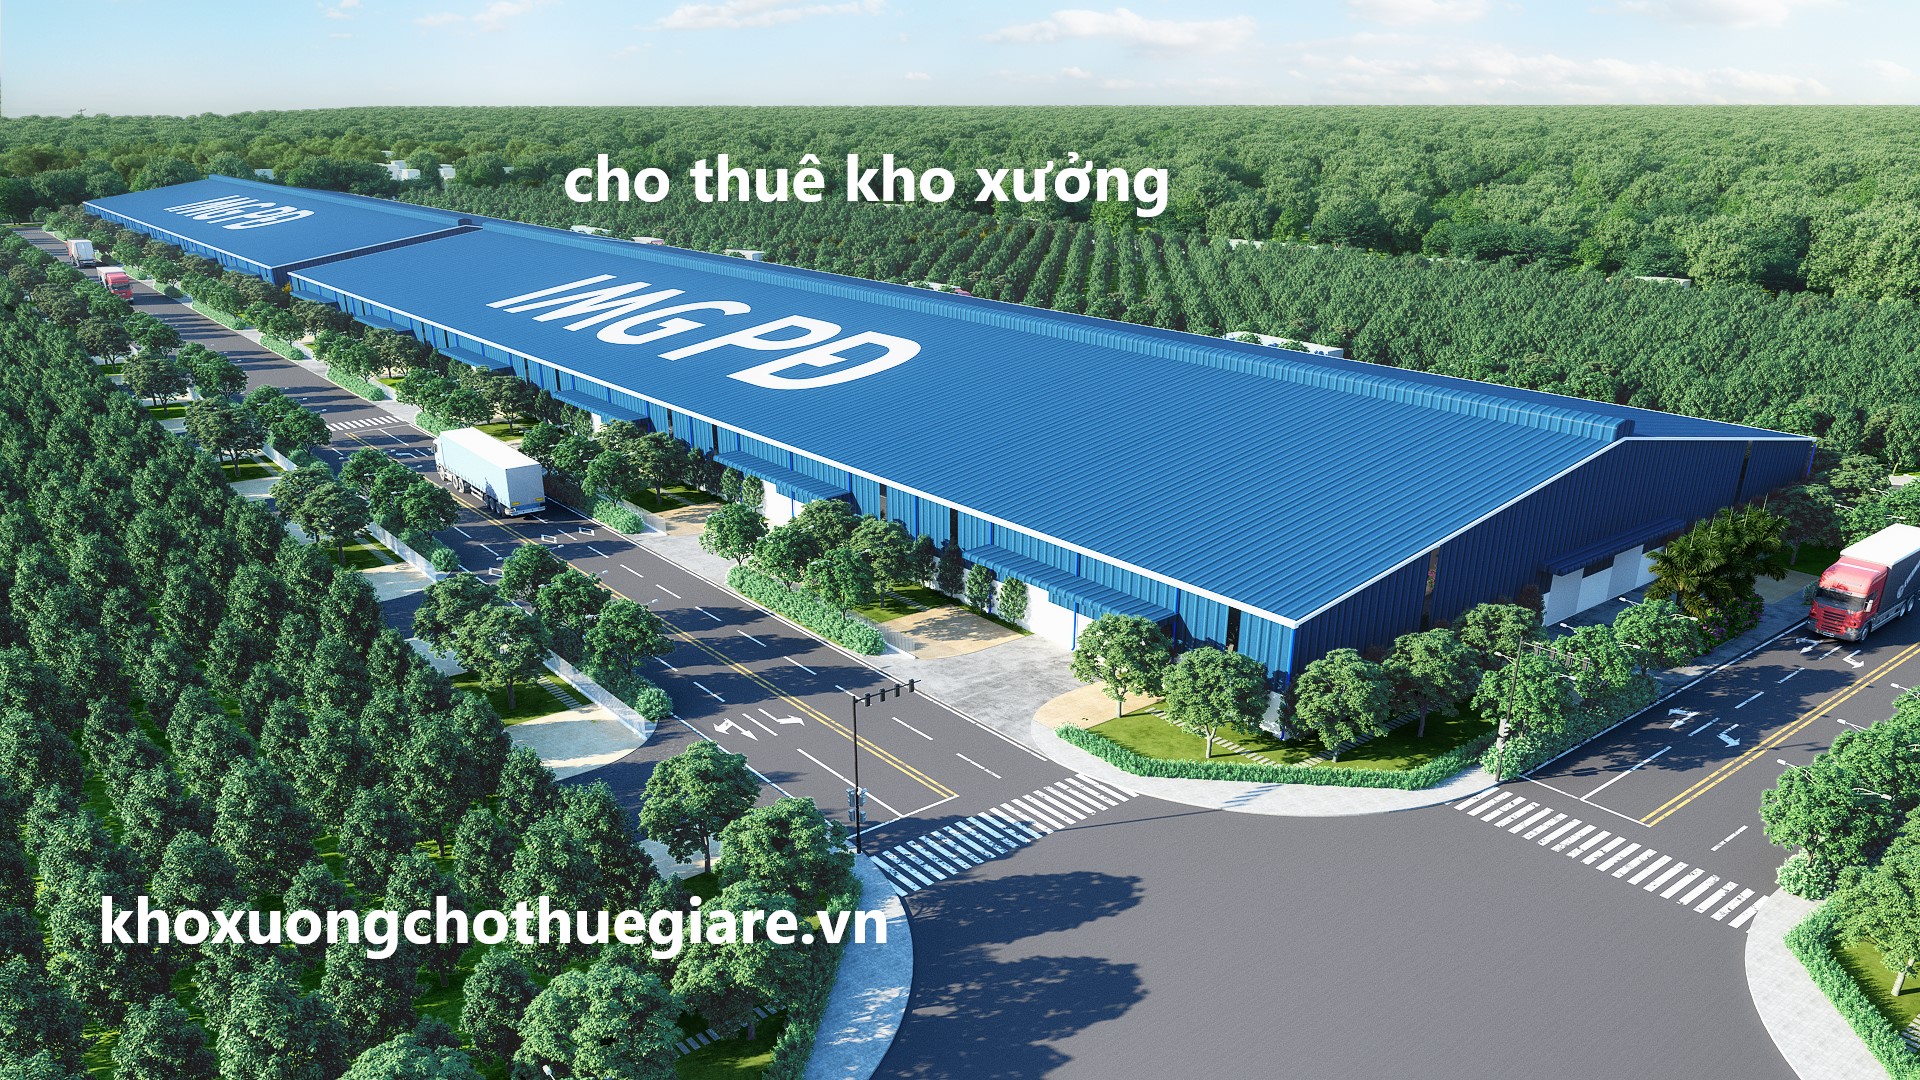 Cho thue nha xuong long an-kcn cau cang Phuoc Dong